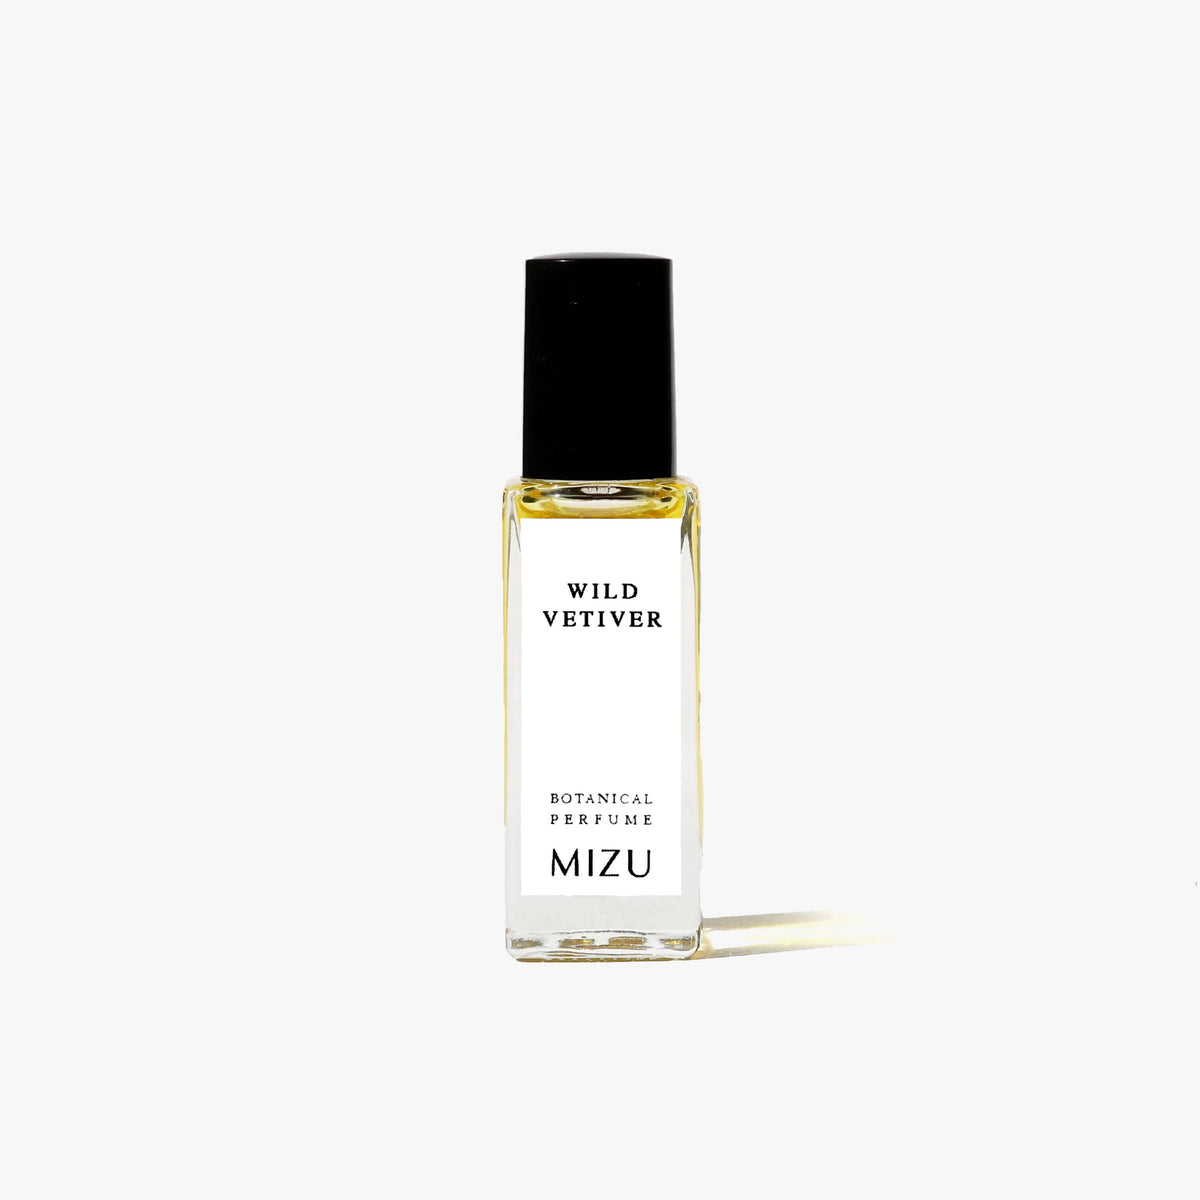 WILD VETIVER All-Natural Botanical Perfume Oil